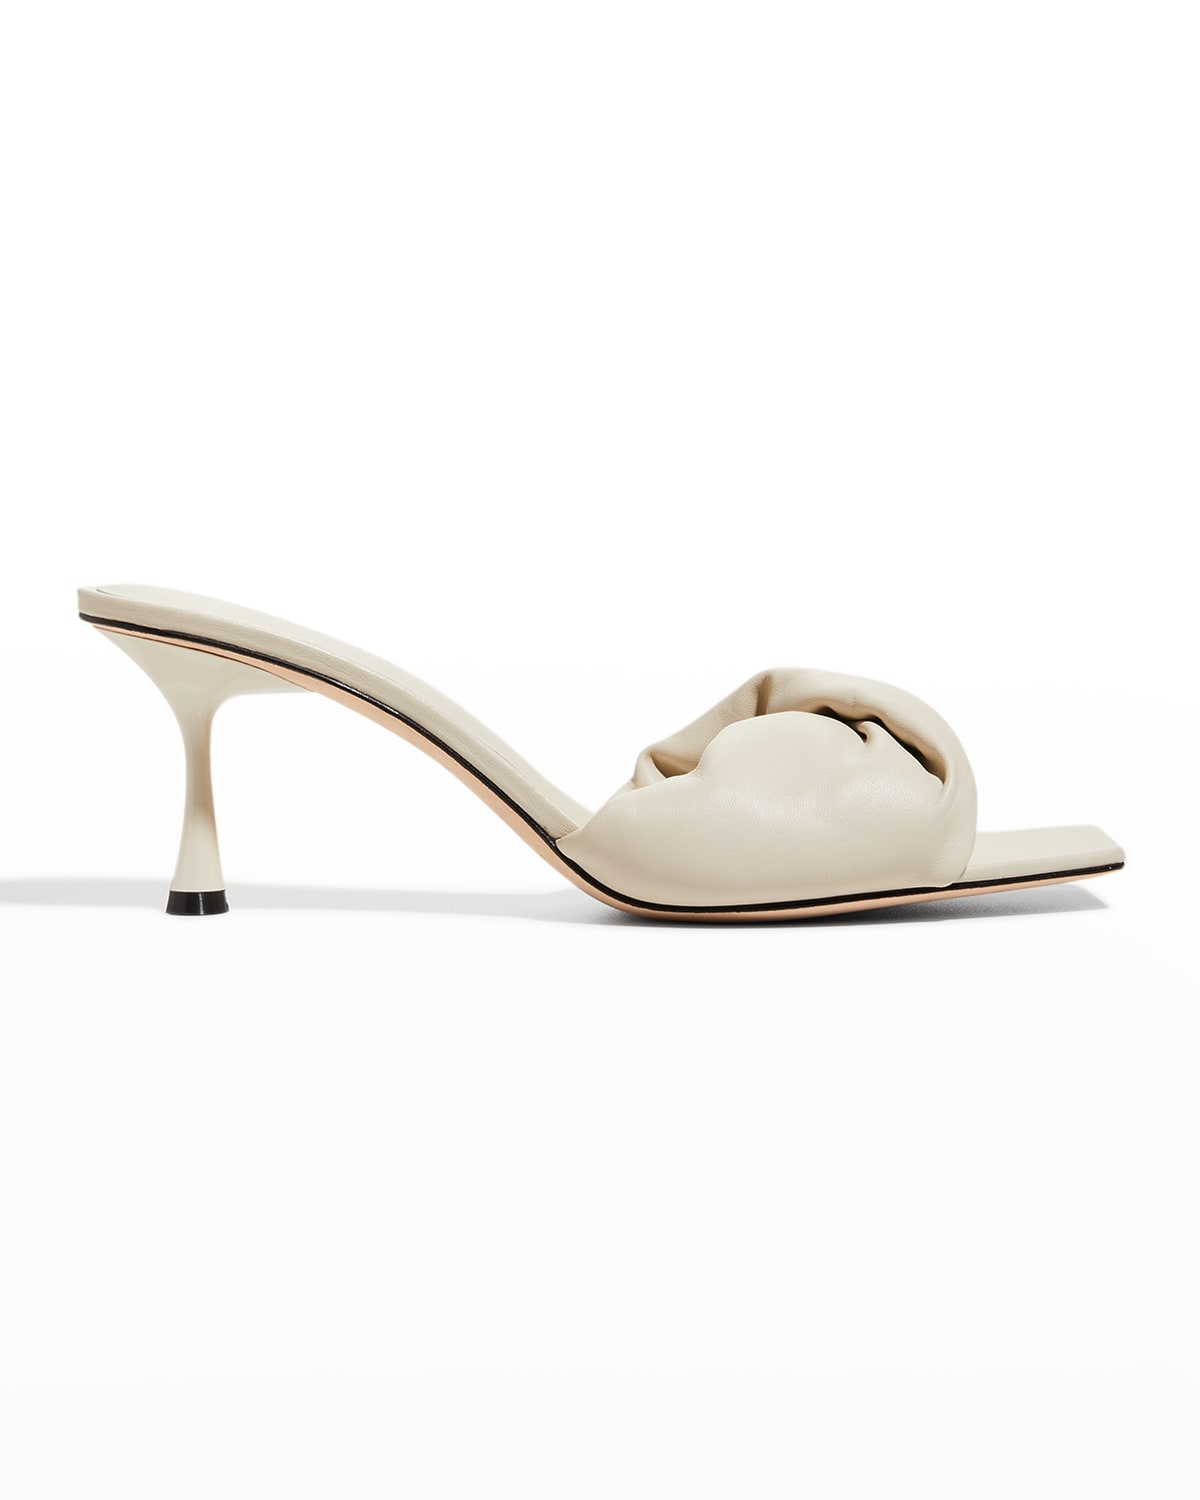 Eileen Fisher Ken Leather Wedge Sandals | Neiman Marcus